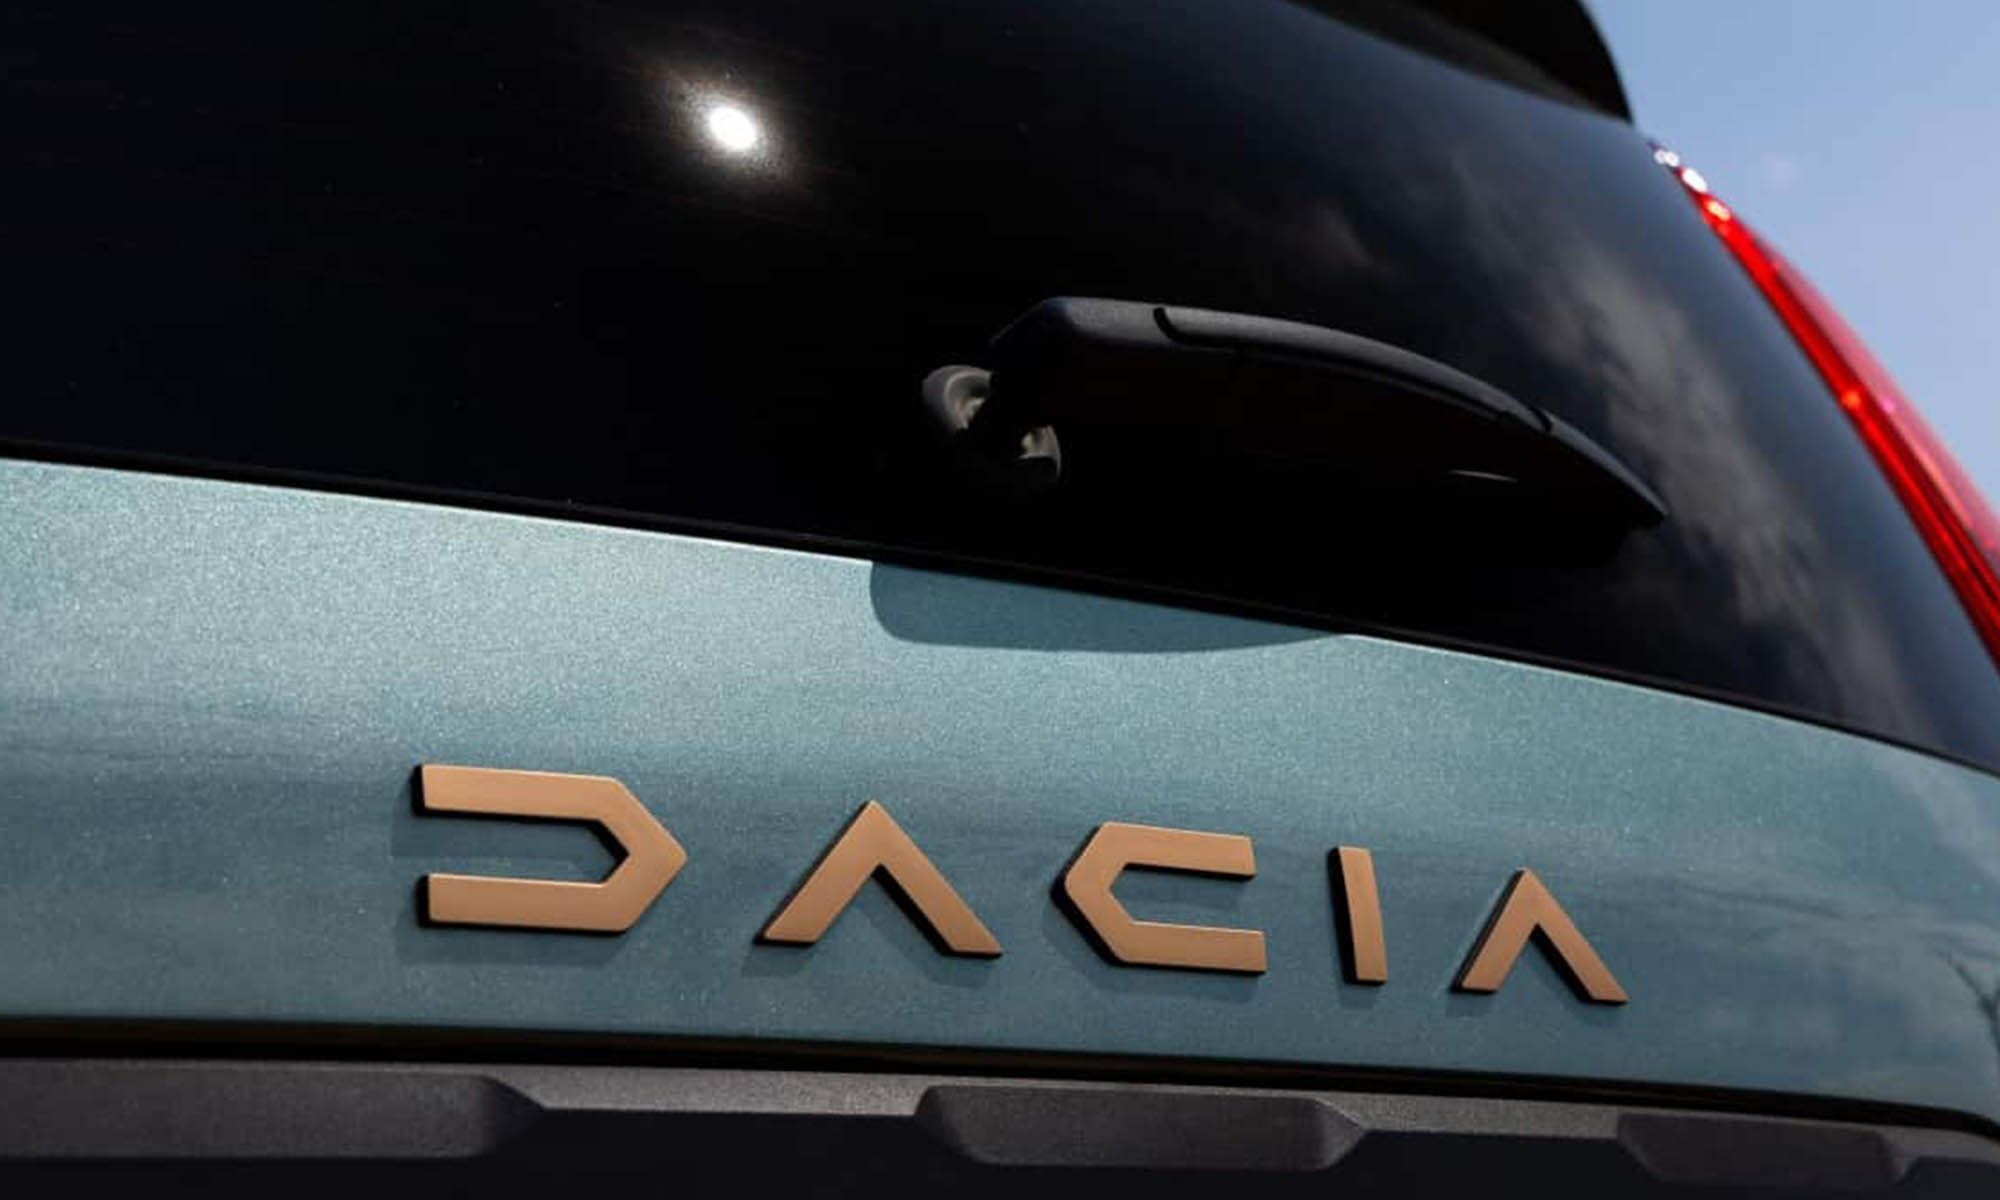 Los costes de la electrificación llevan a Dacia a la búsqueda de alternativas “limpias” para sus coches.